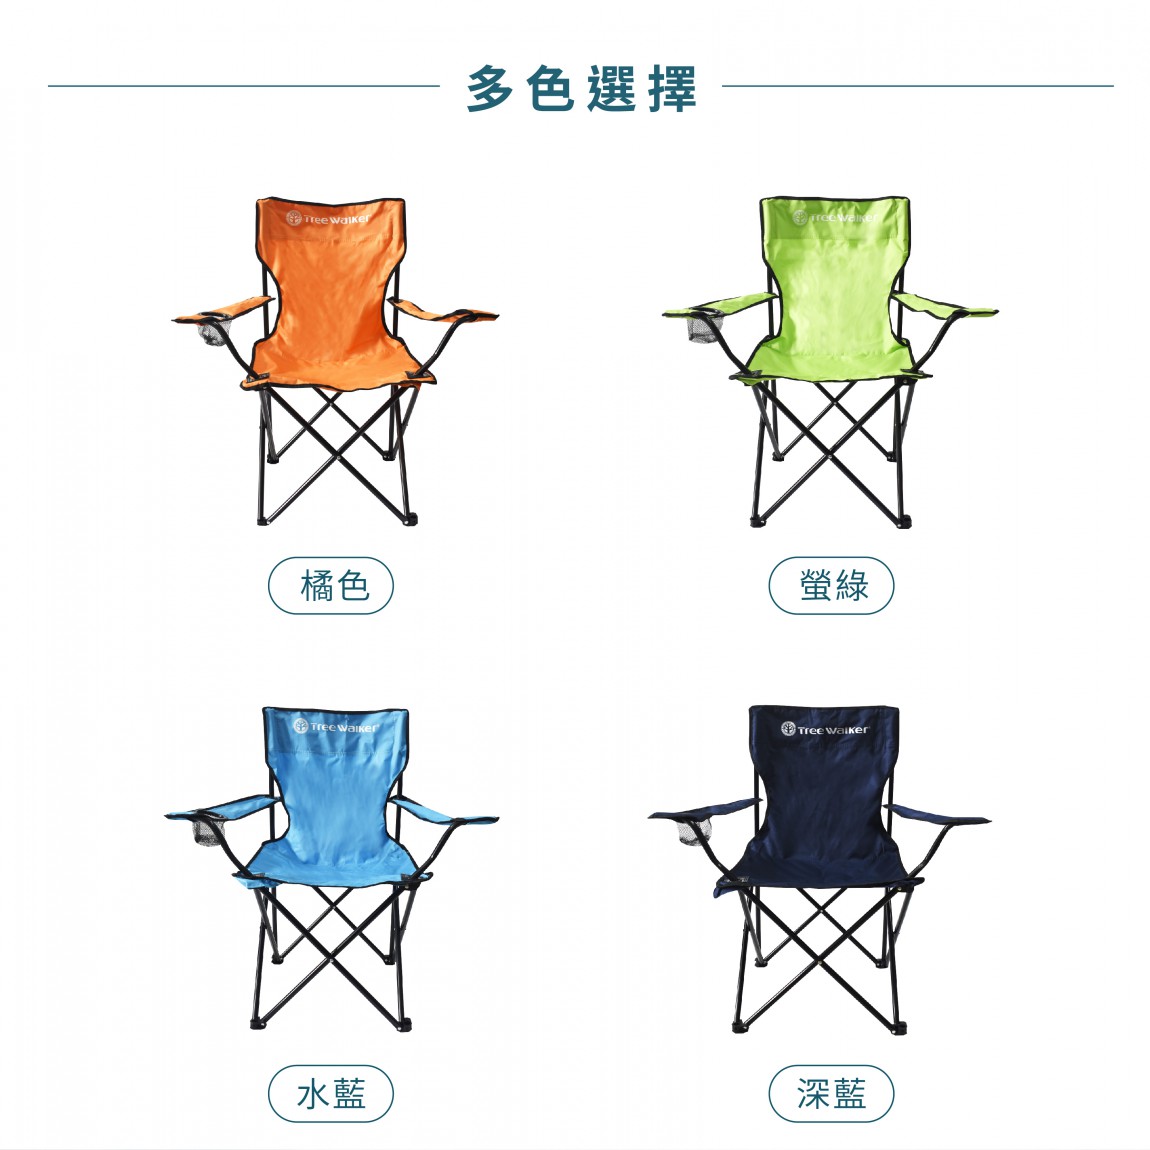 休閒扶手折疊椅-800x800px-07